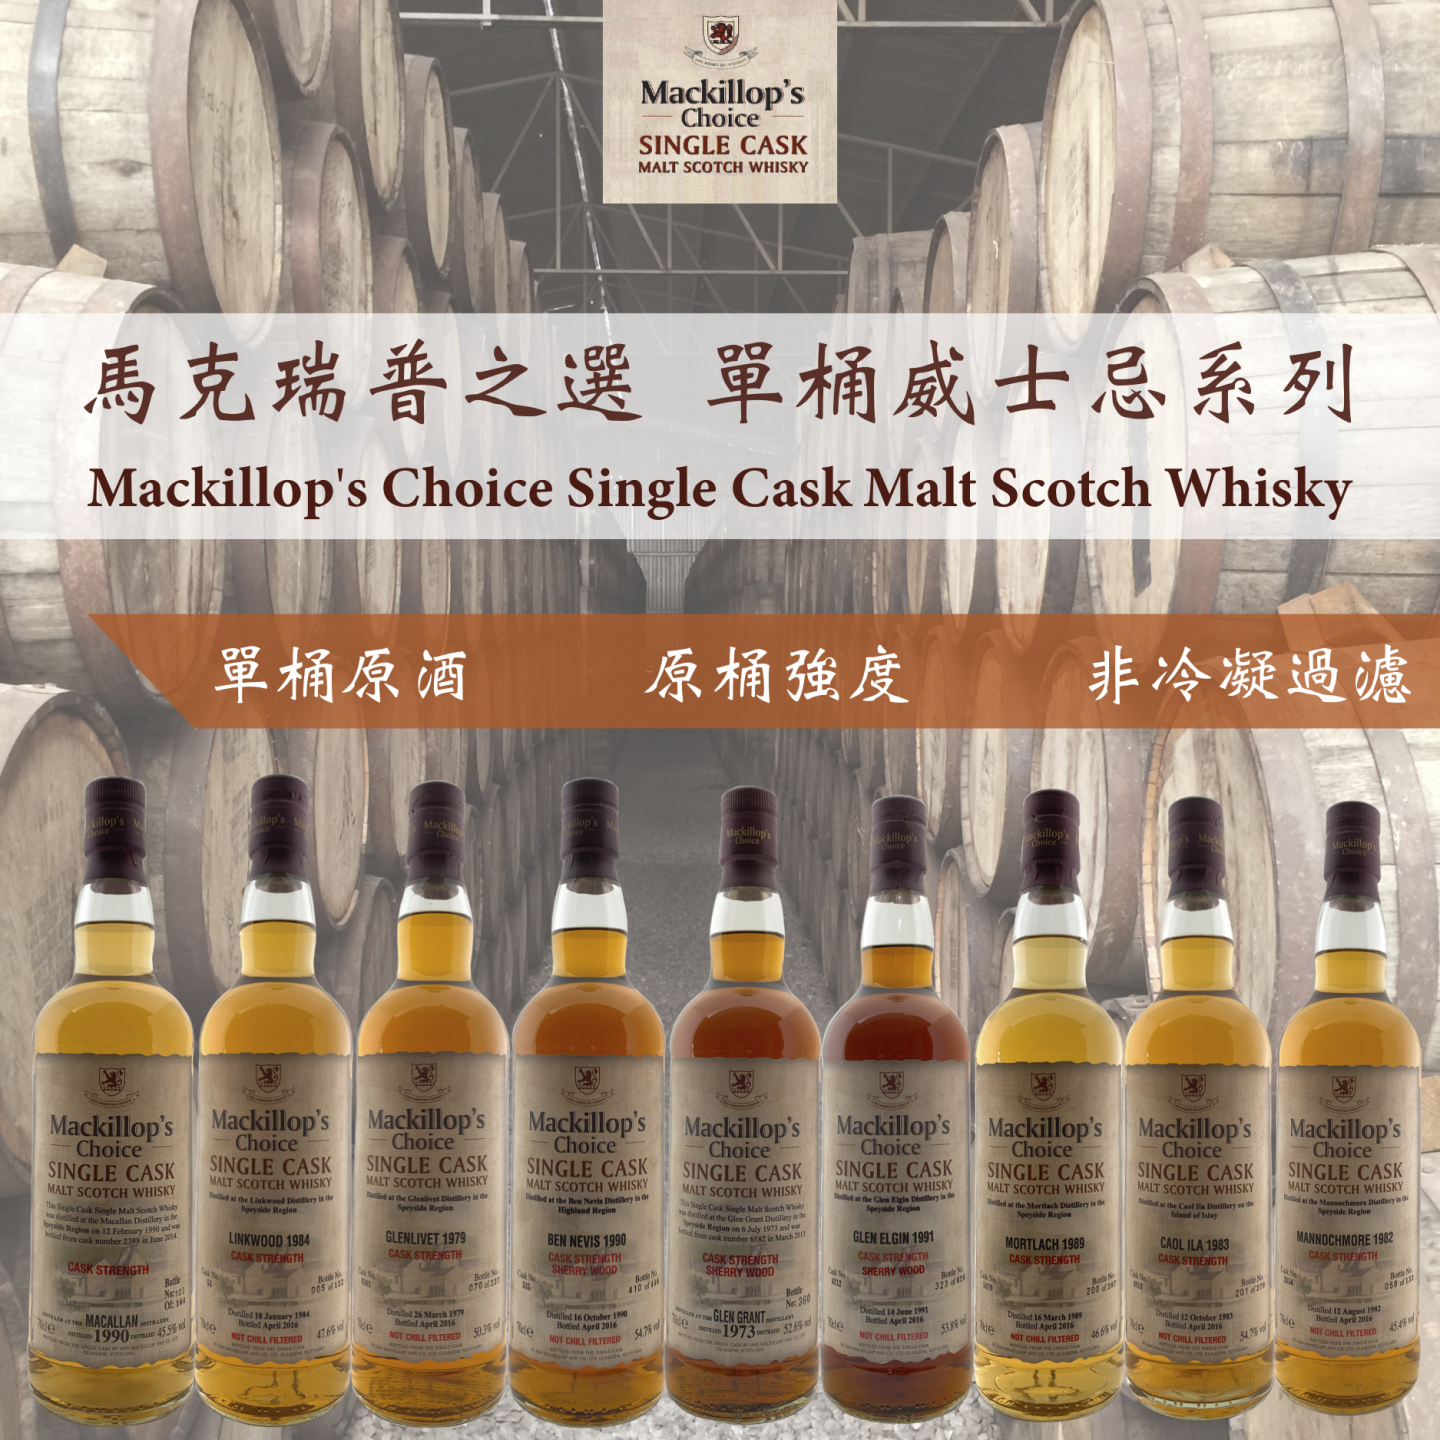 Mackillop's Choice Single Cask Malt Scotch Whisky